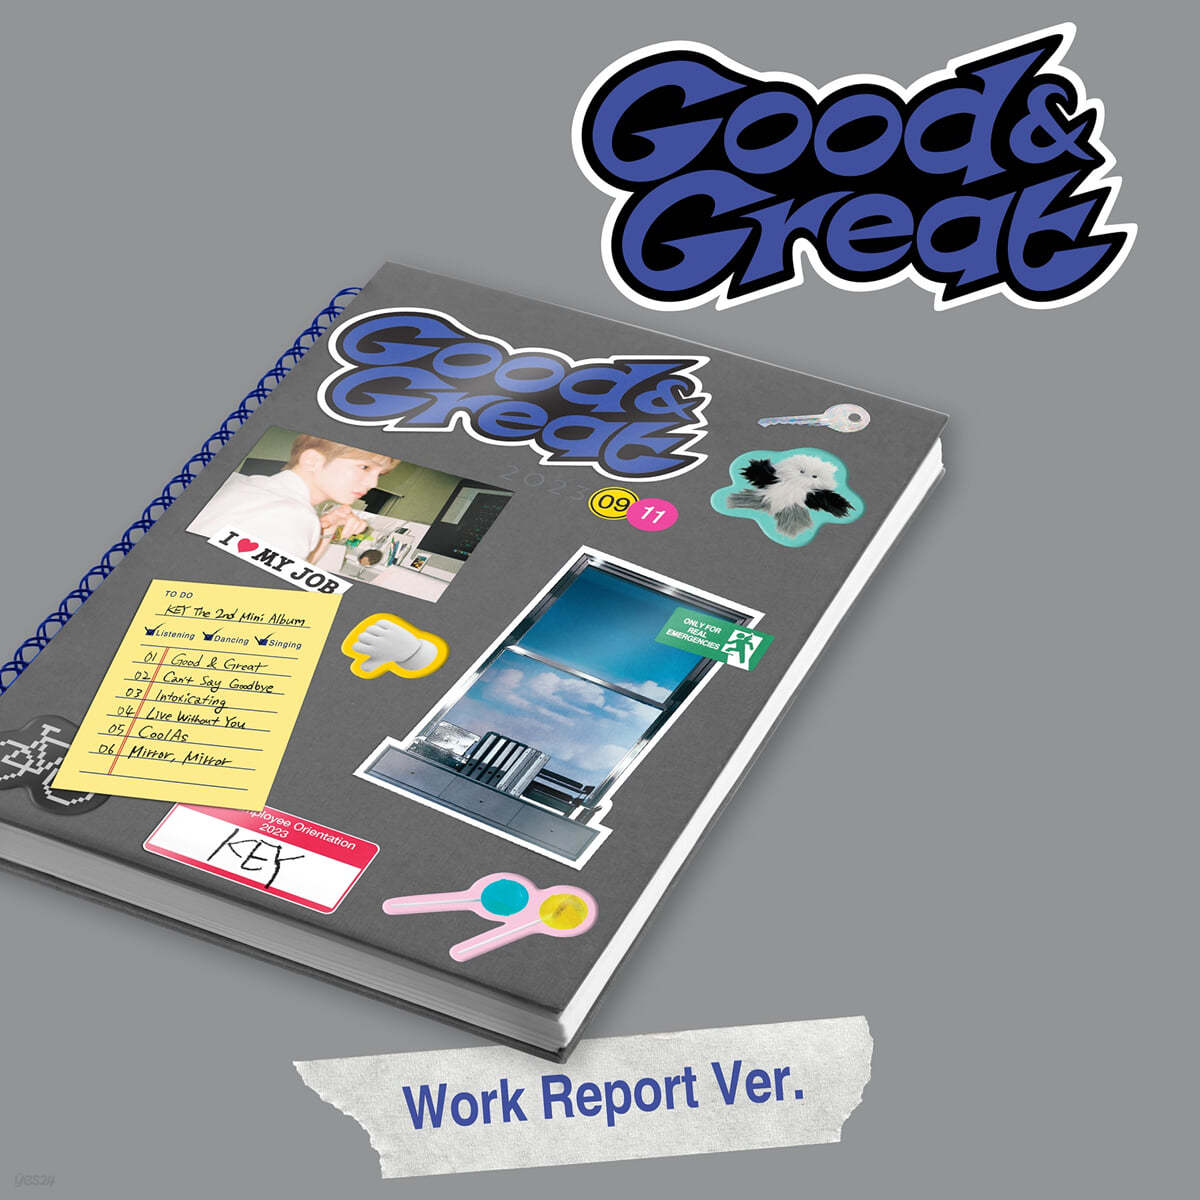 키 (KEY) - 미니앨범 2집 : Good & Great [Work Report Ver.]